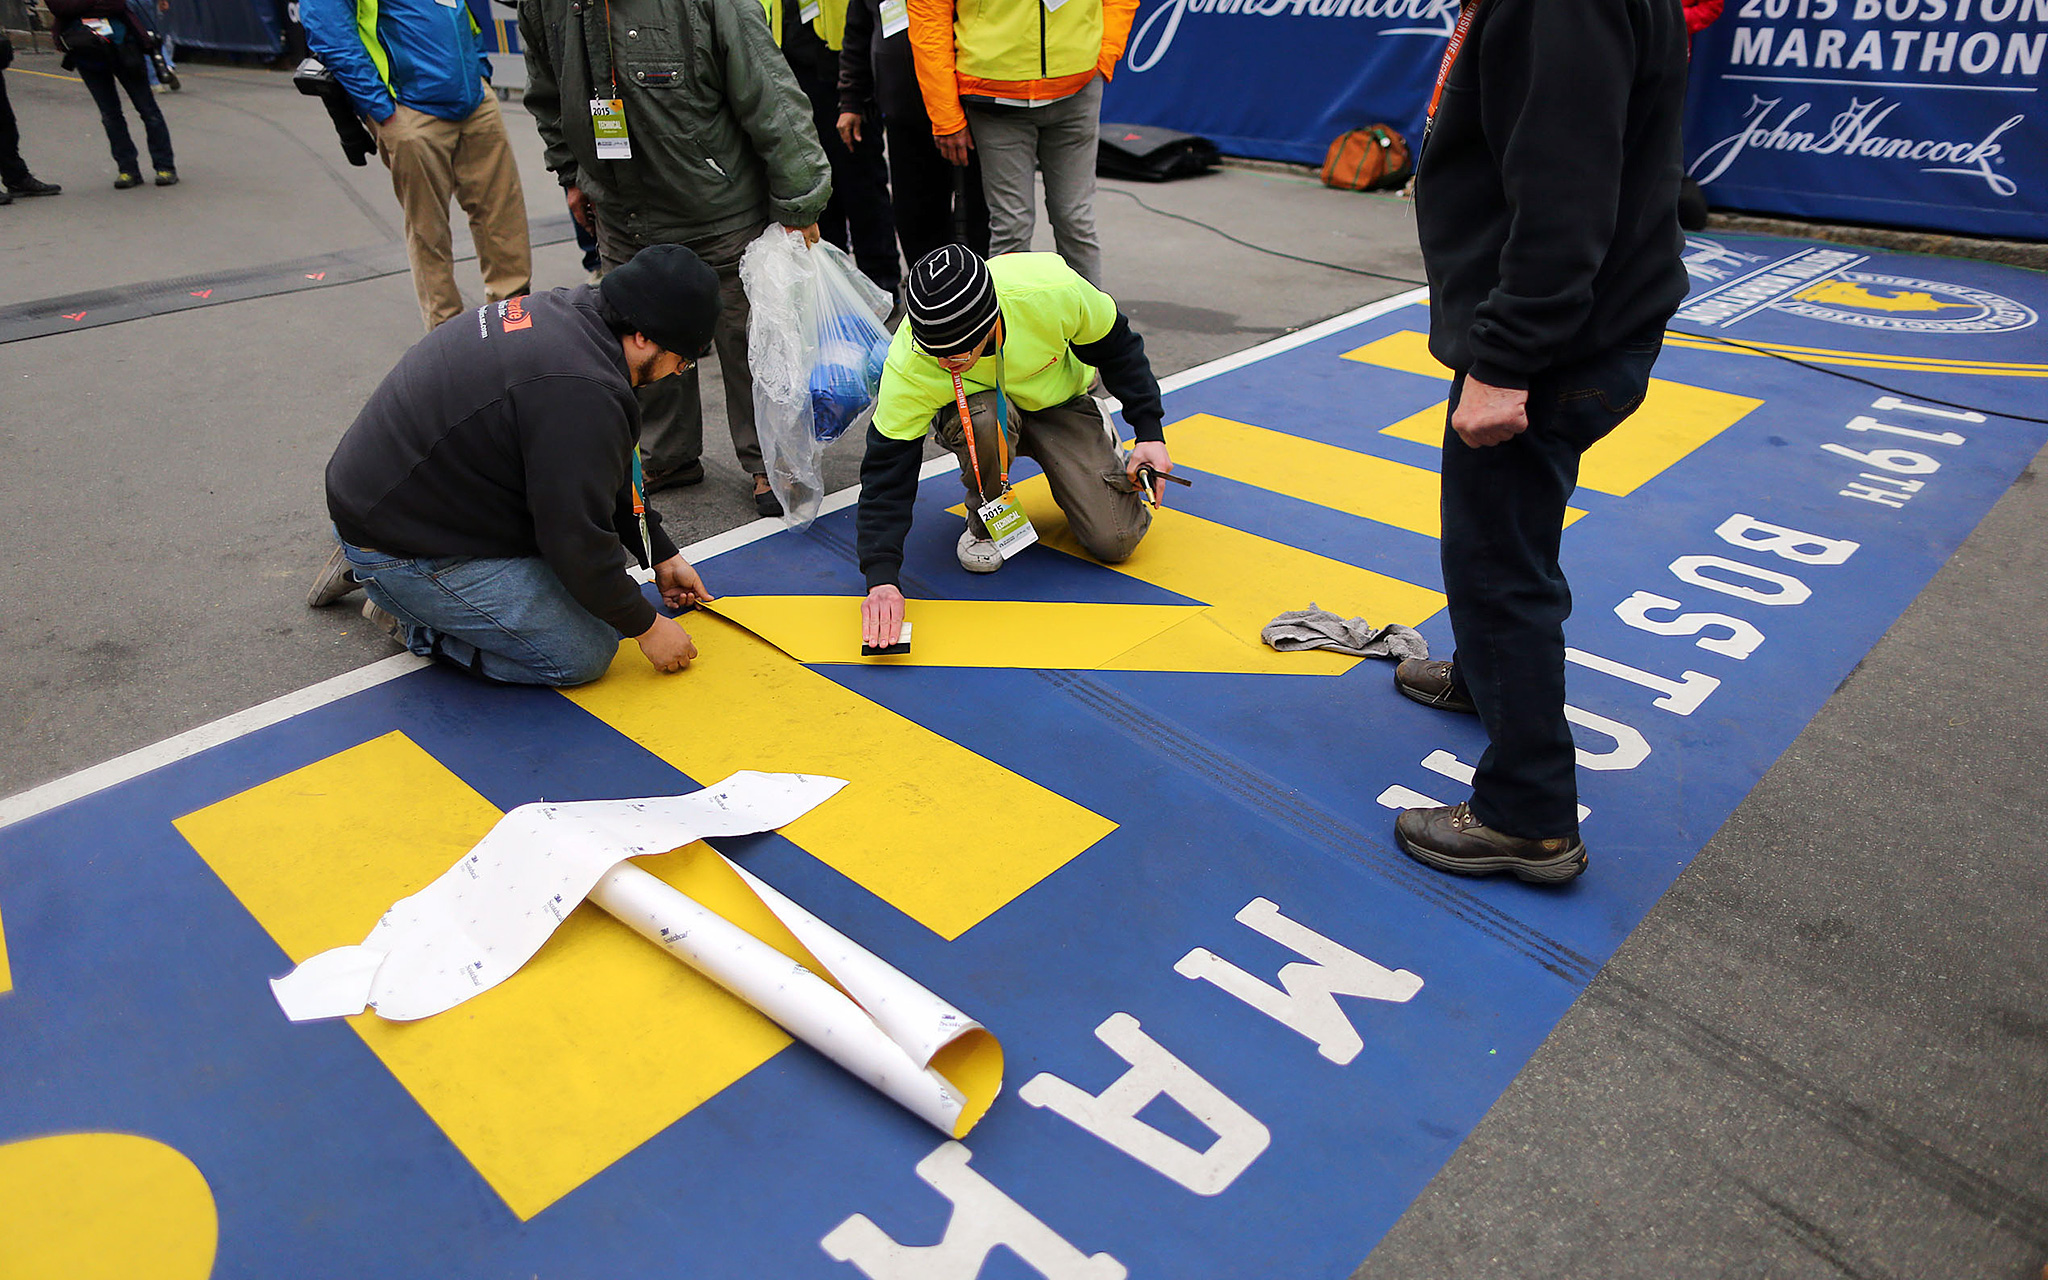 119th Boston Marathon images ESPN